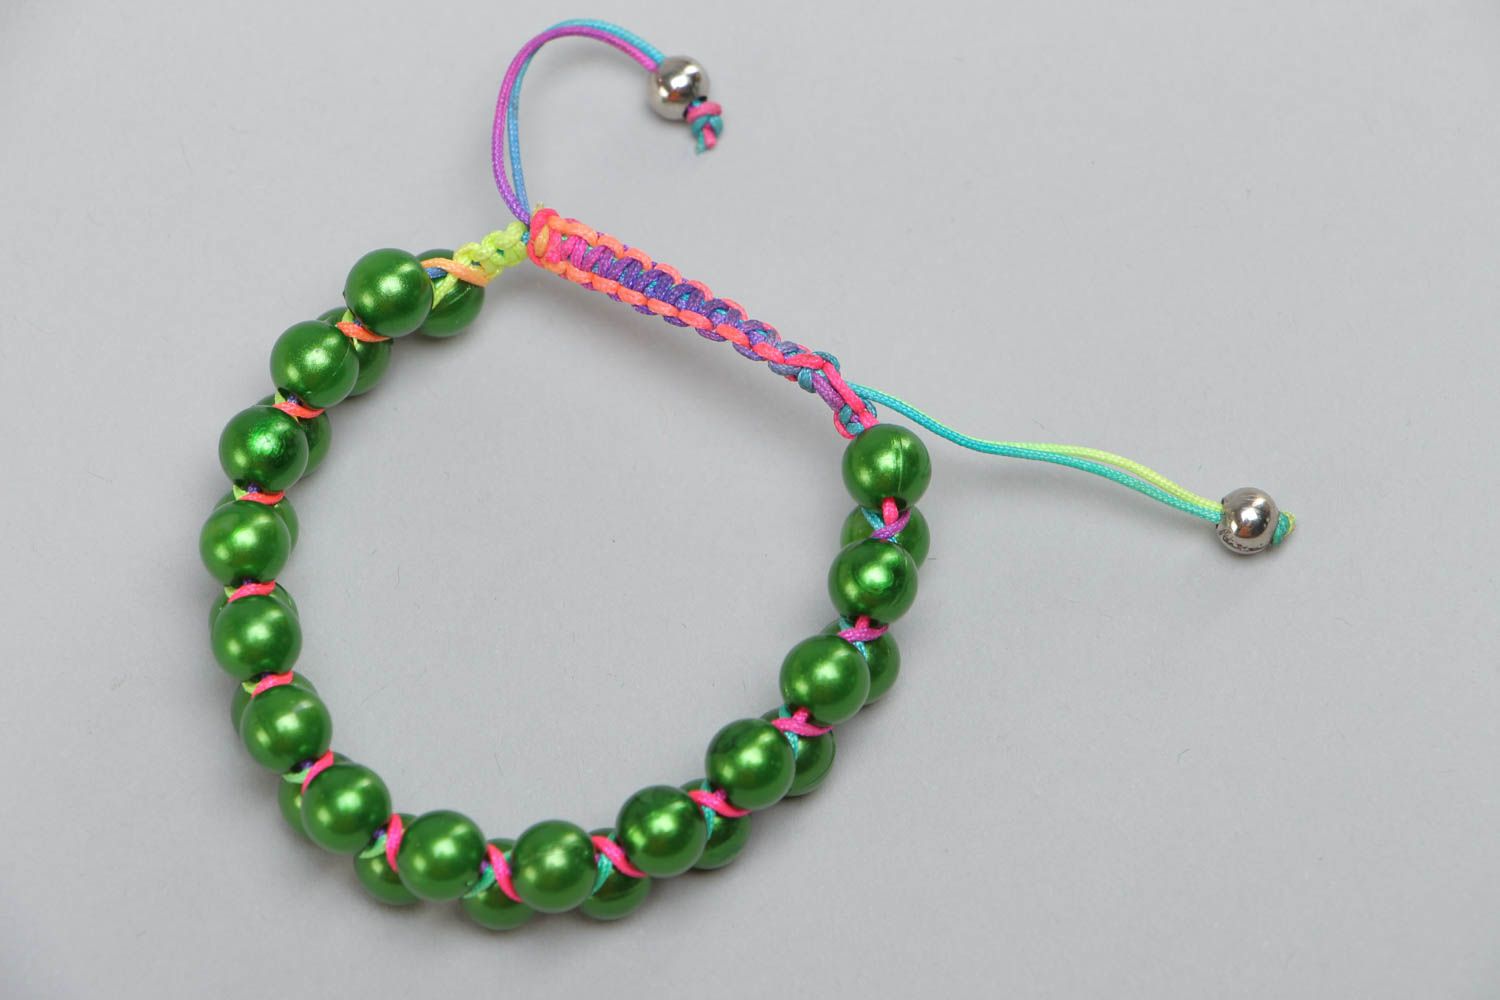 Exklusives handgemachtes grünes Armband mit Glaskugeln für stilvolle Looks foto 2